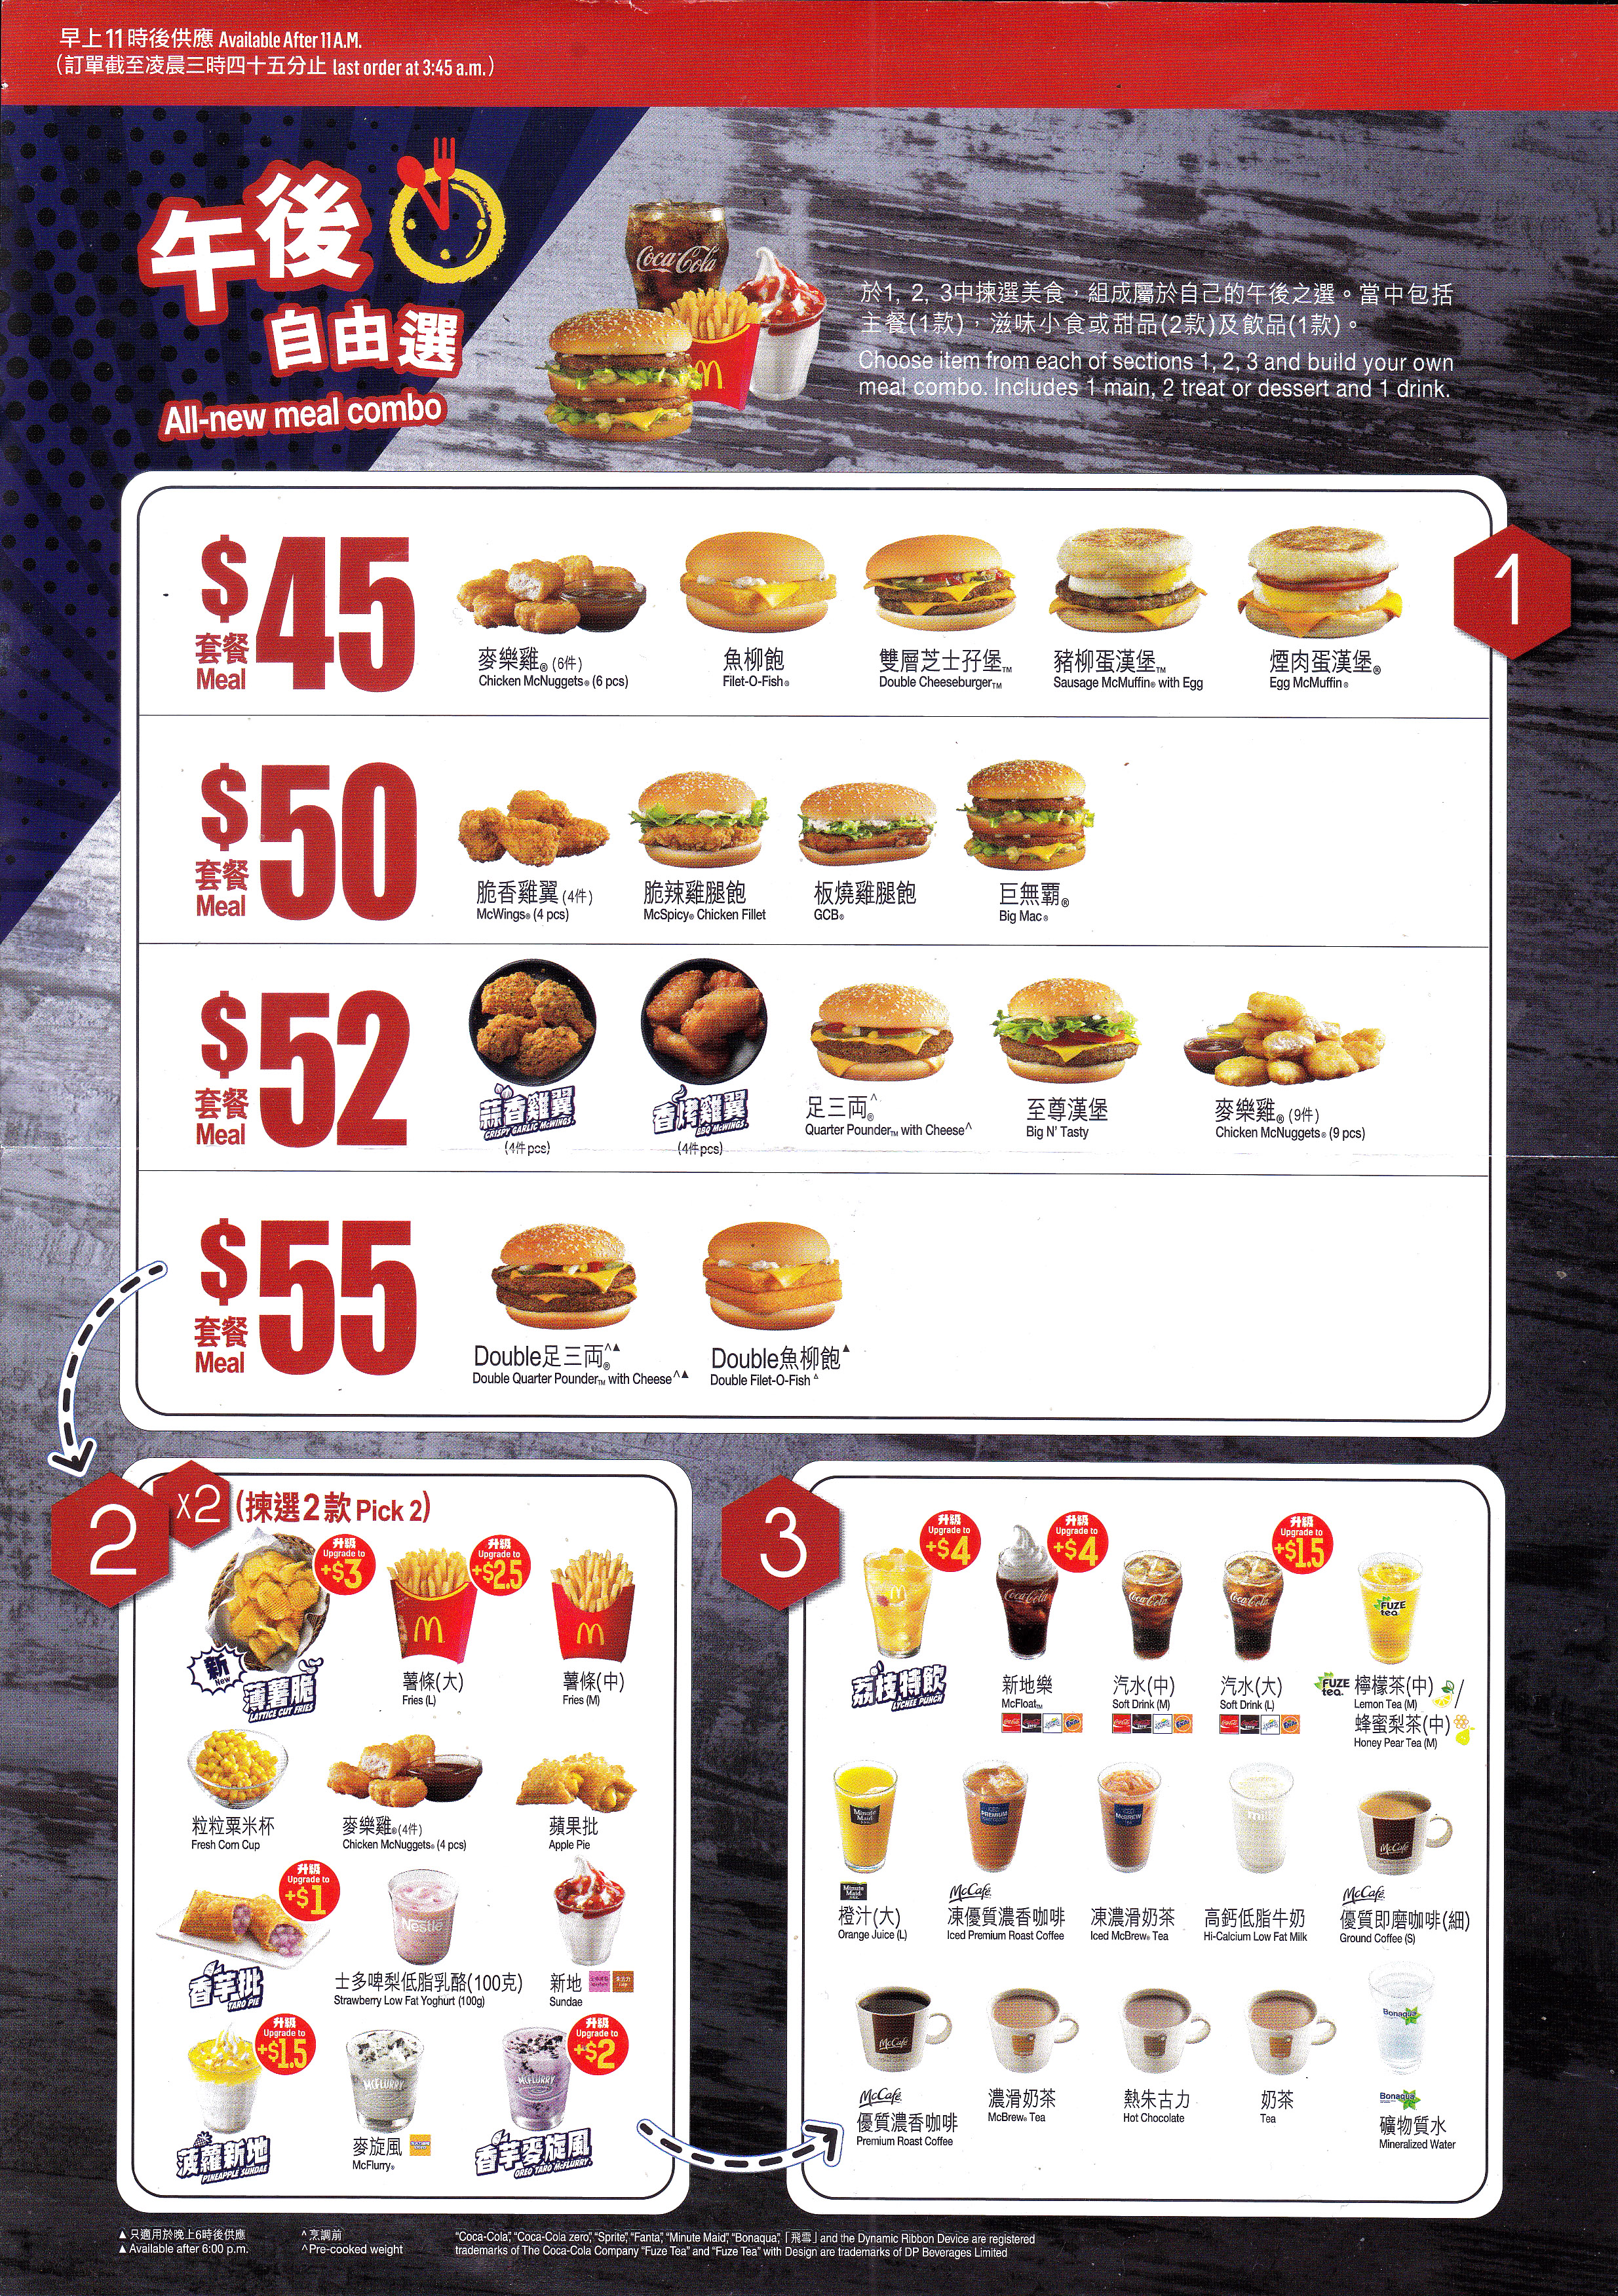 麥當勞24小時麥麥送餐單外賣速遞優惠服務最低消費要幾錢去邊度平哪邊間好介紹 mcdonald's restaurants hong kong ltd mcdelivery service breakfast time menu mcdonald delivery prices